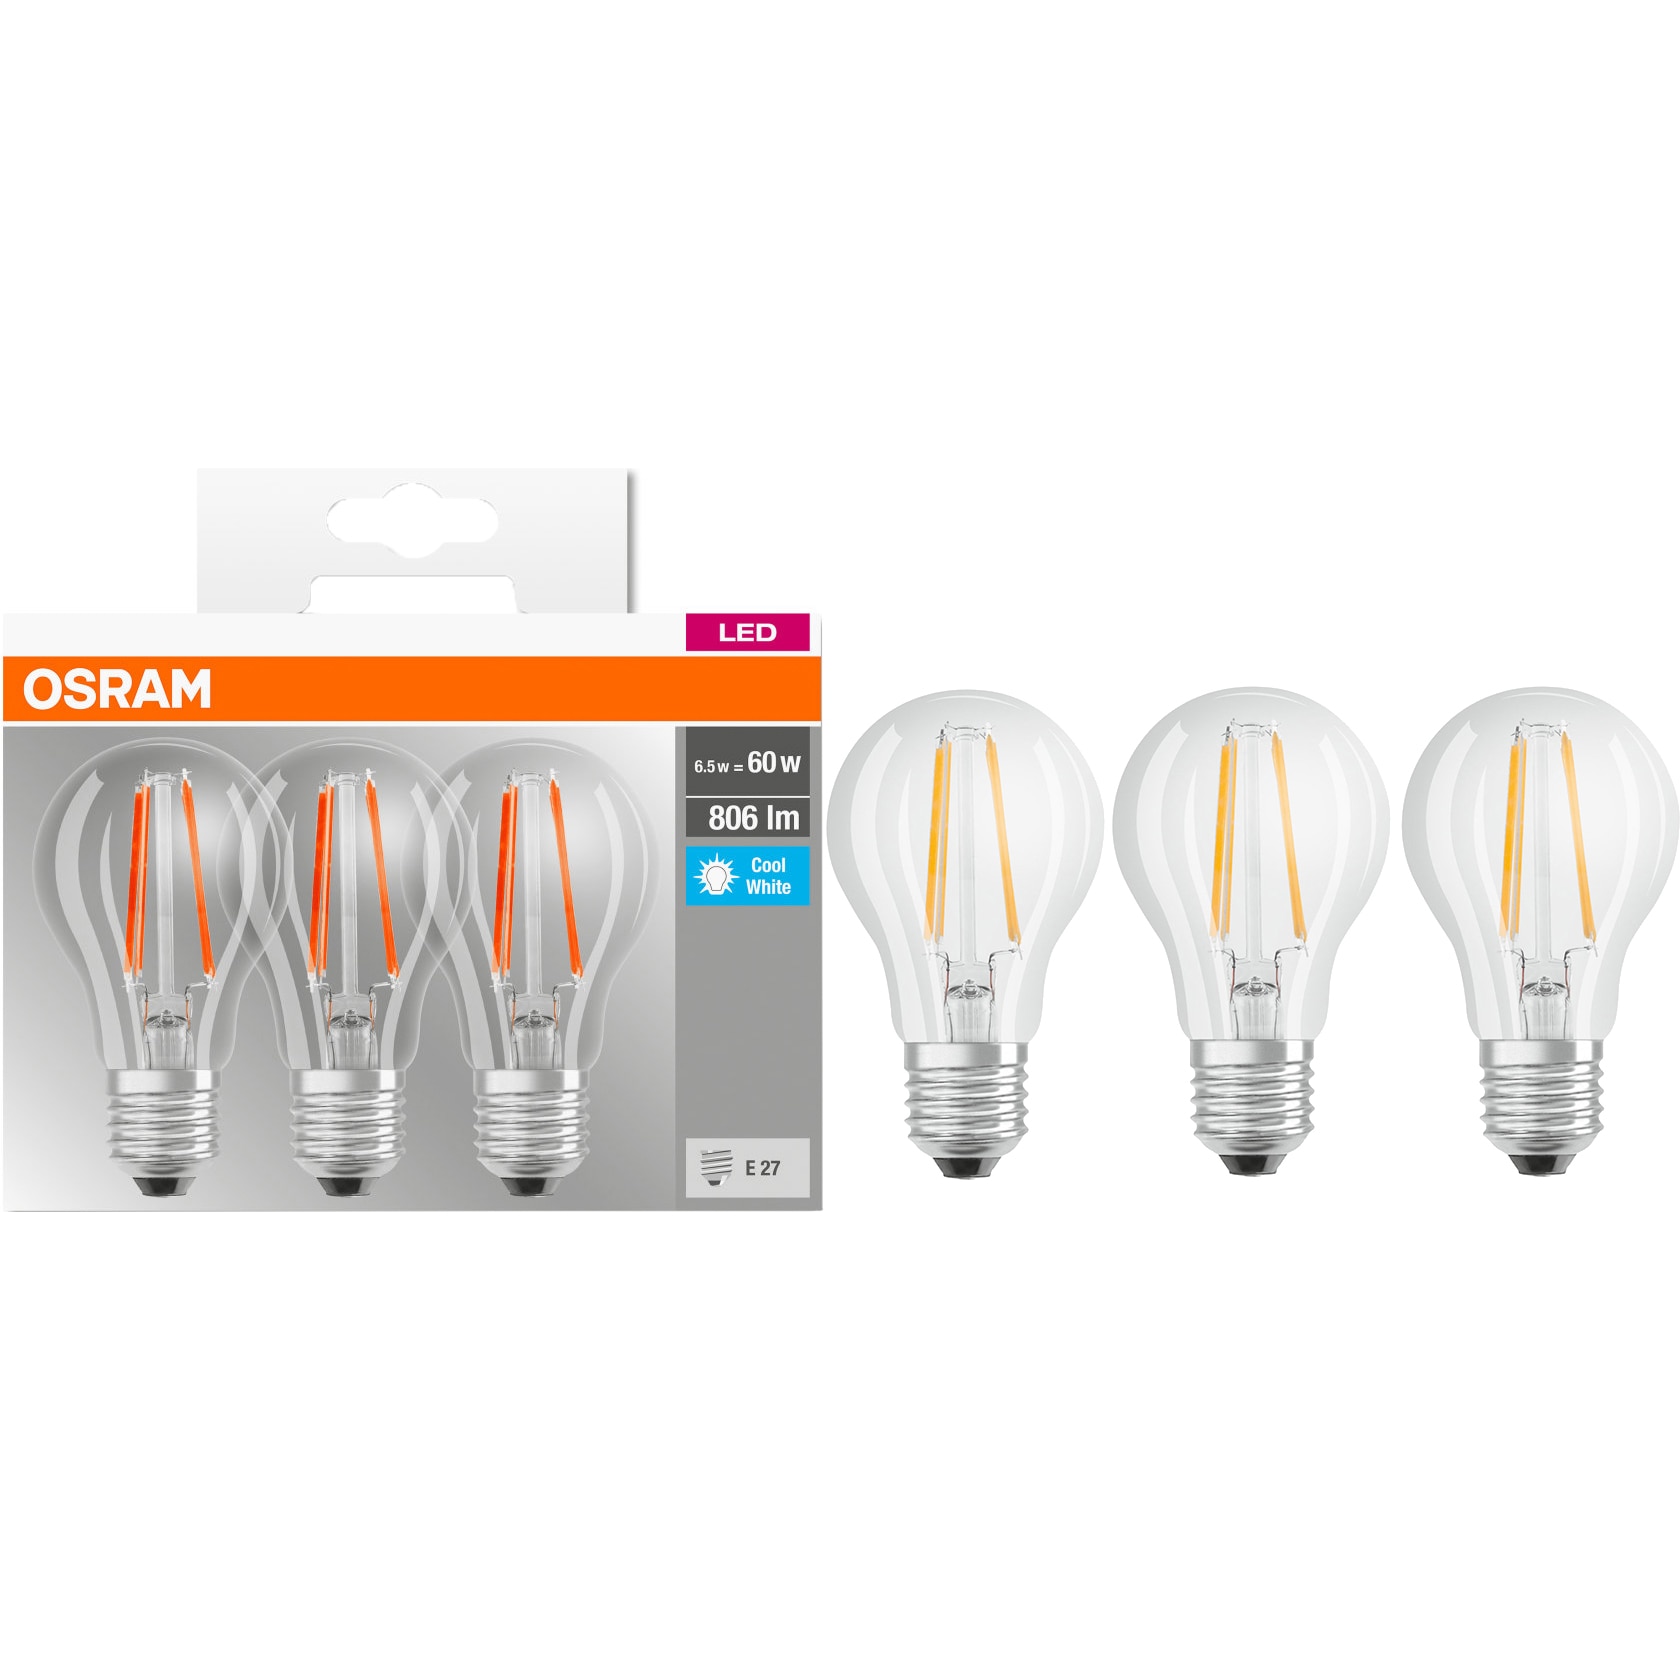 OSRAM Ampoule LED Retrofit Classic E27 6W (60W) A++ - Ampoule LED -  Garantie 3 ans LDLC